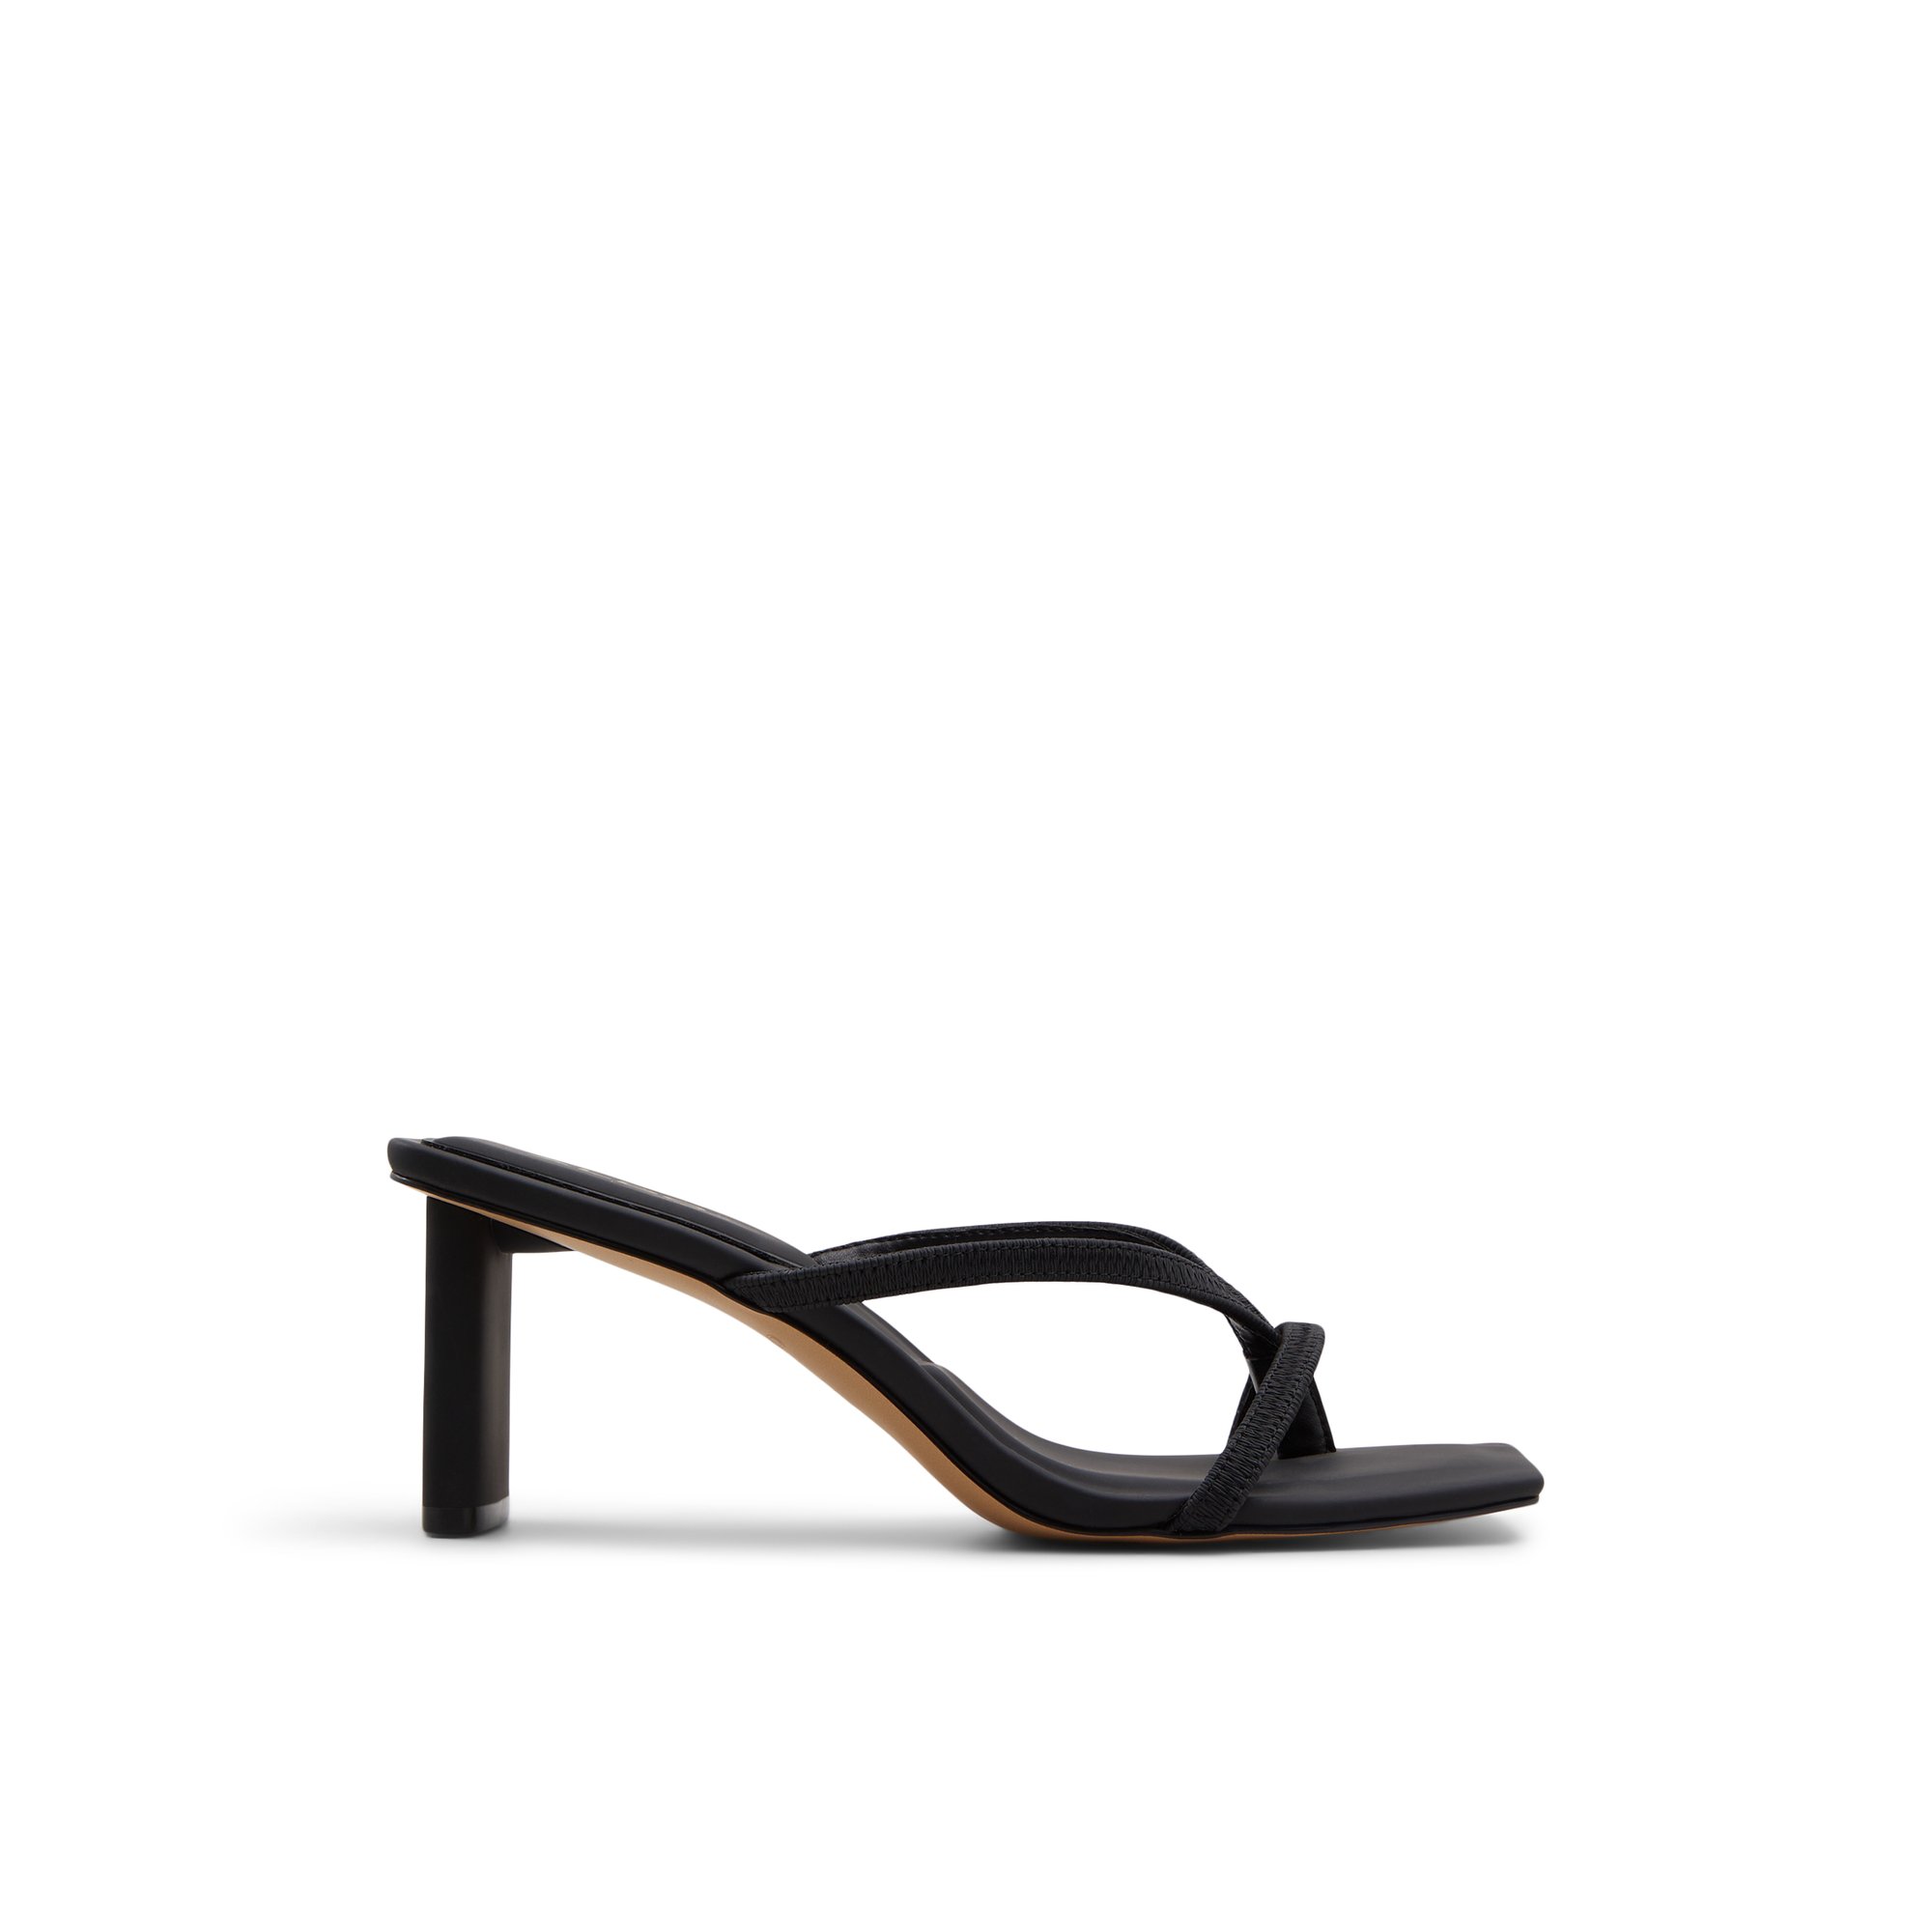 ALDO Sanne - Women's Heels Strappy - Black